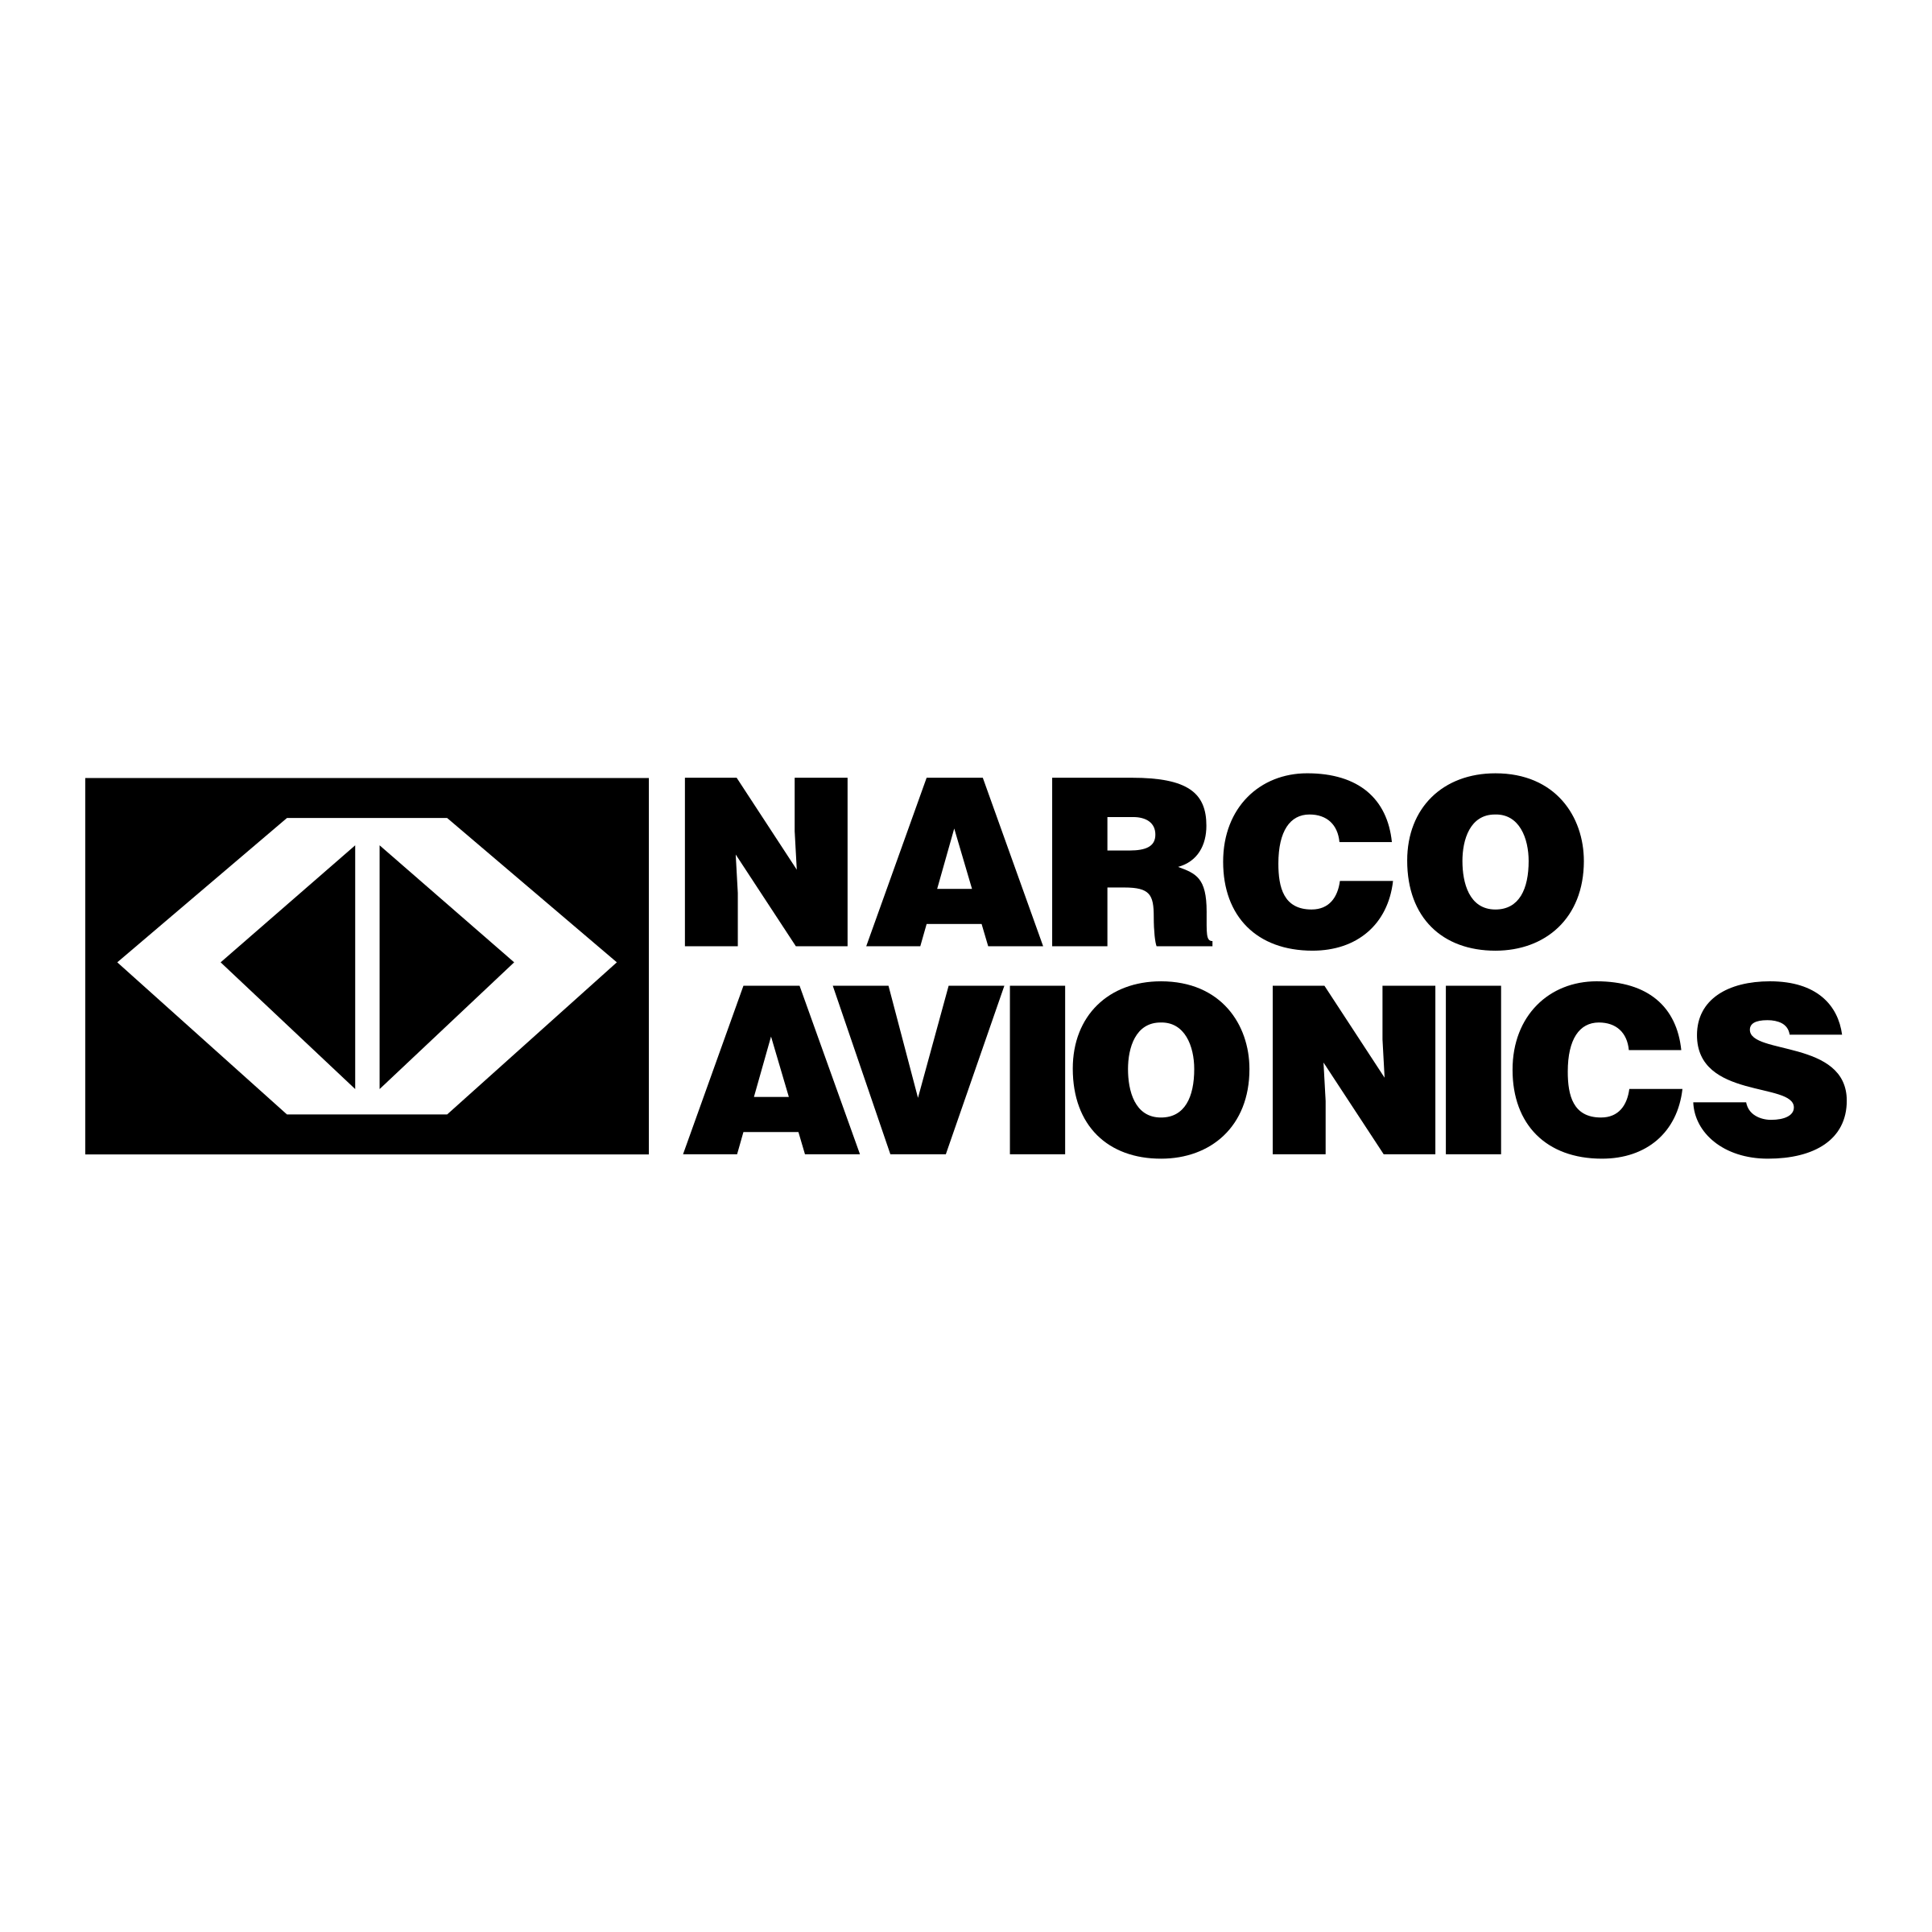 Avionics Logo - Narco Avionics Logo PNG Transparent & SVG Vector